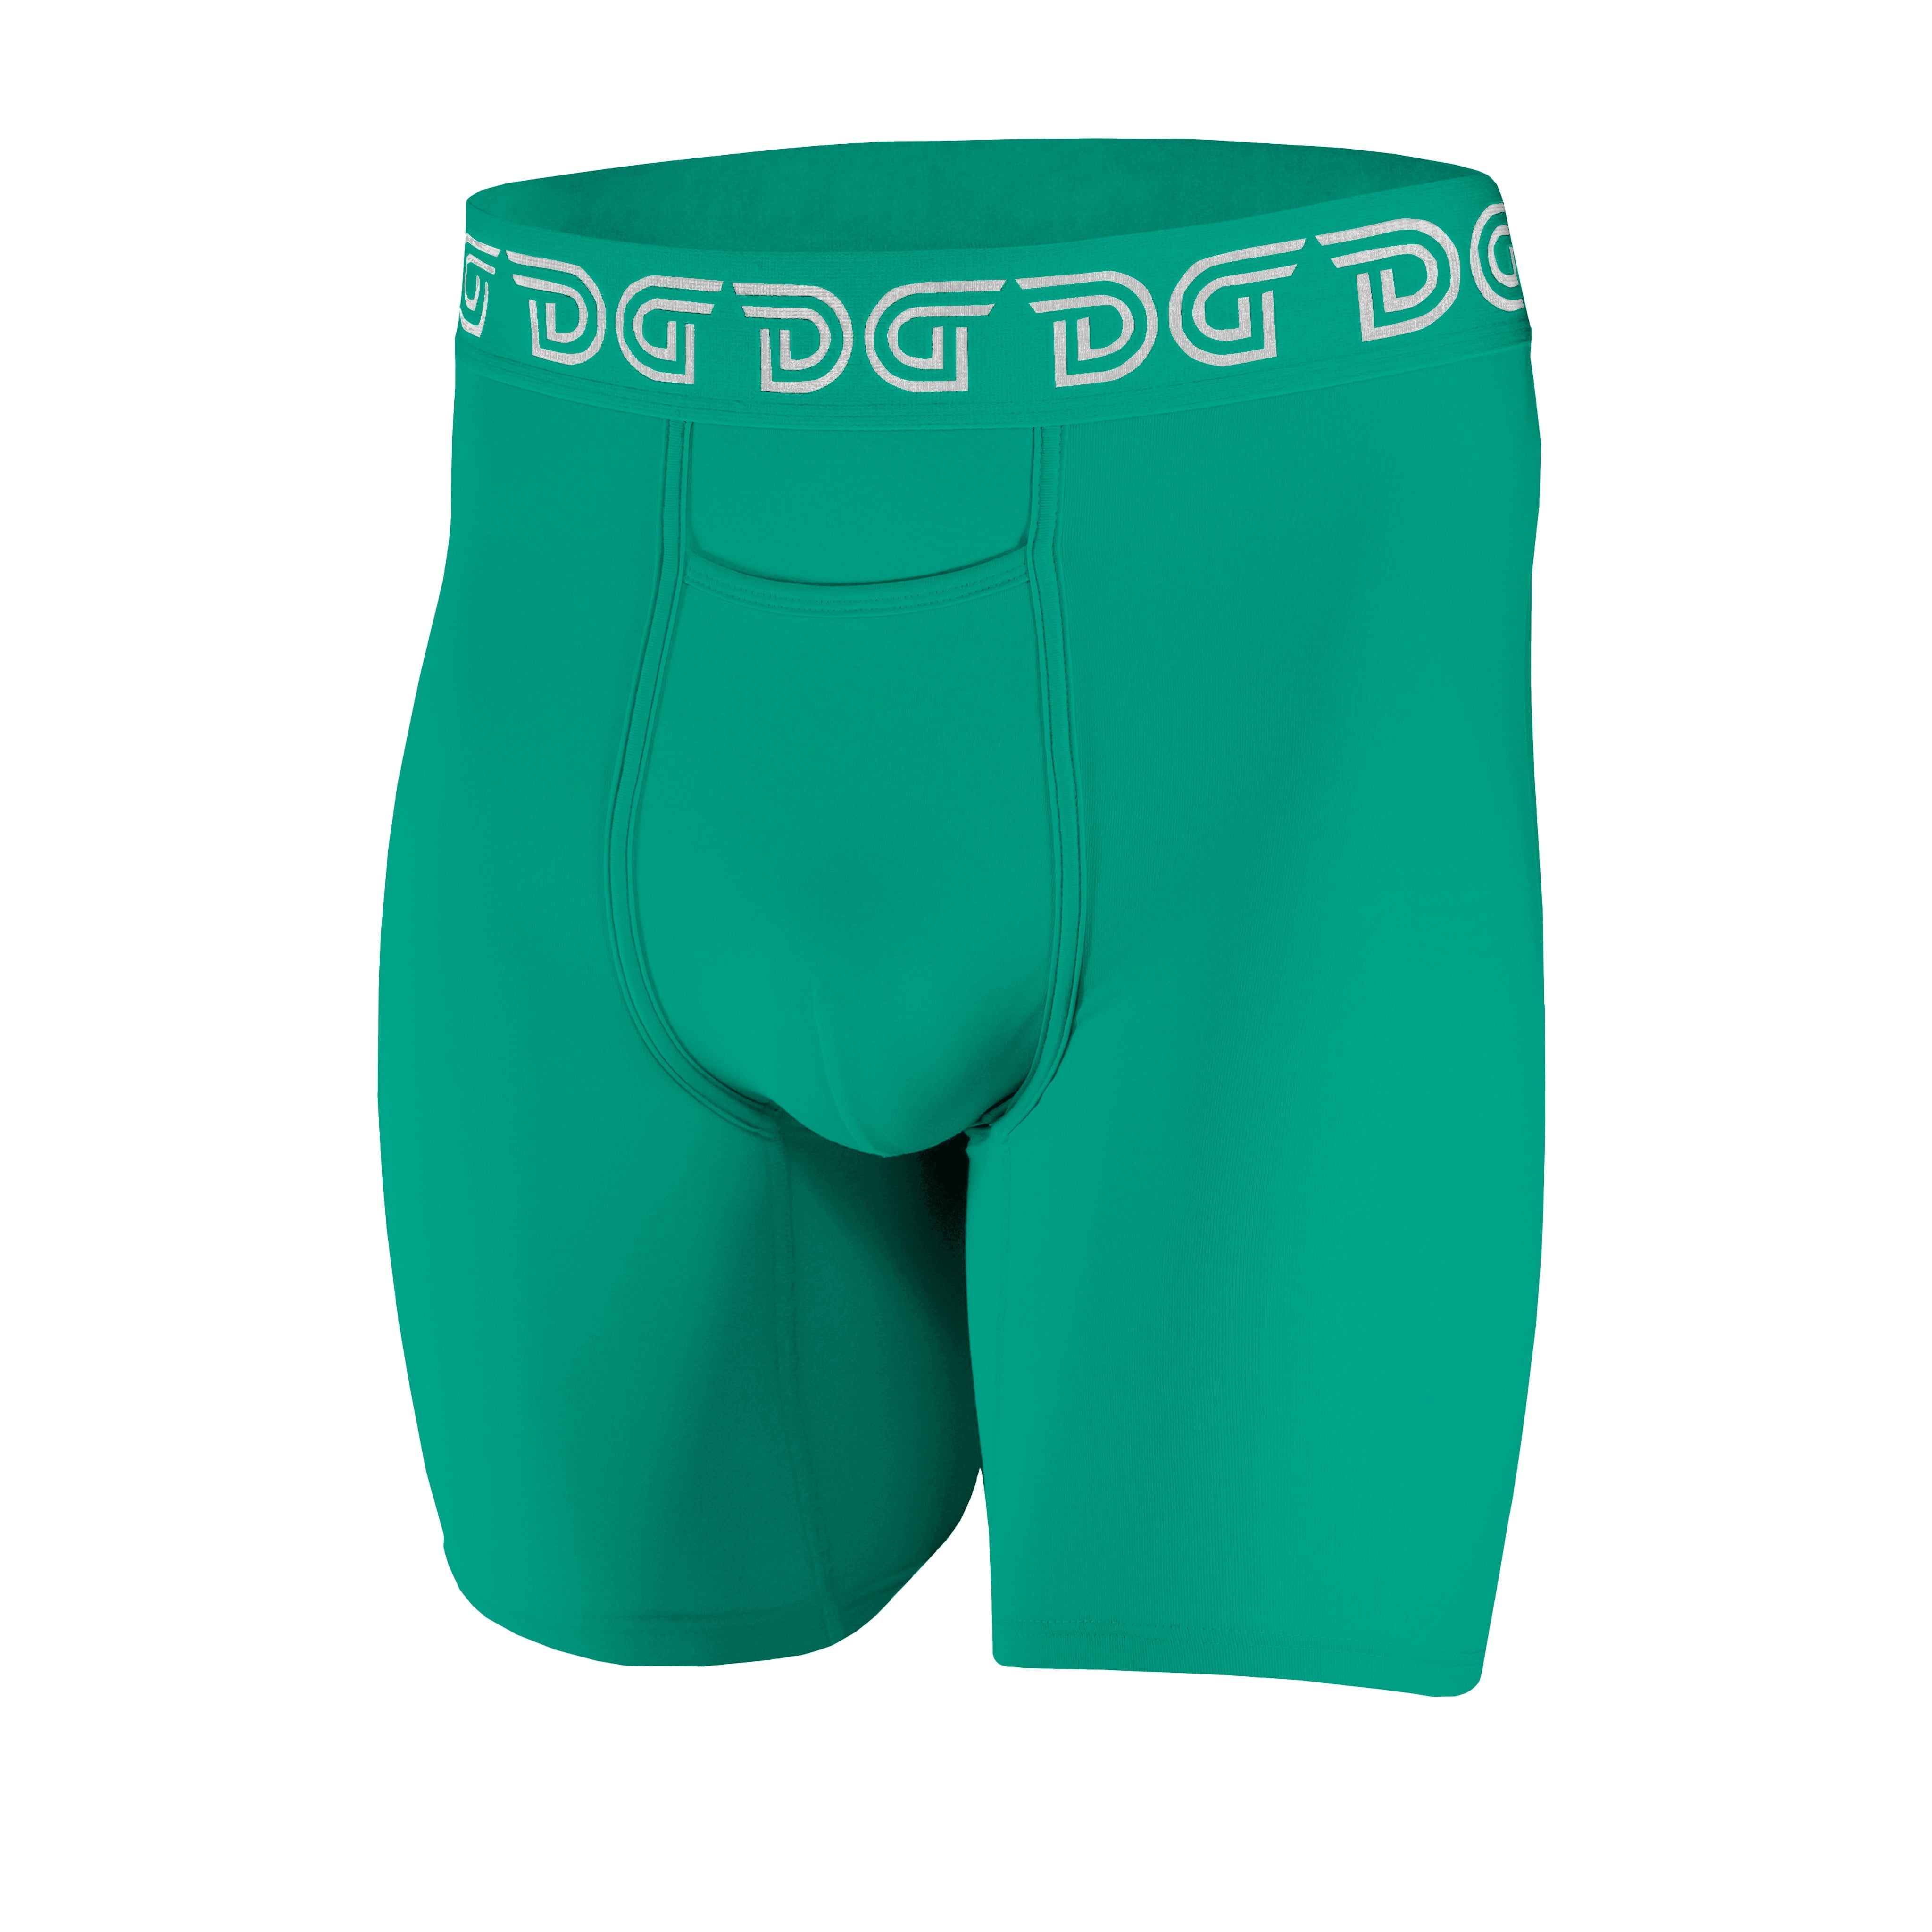 Steel Green Men's Underwear – Drawlz Brand Co.